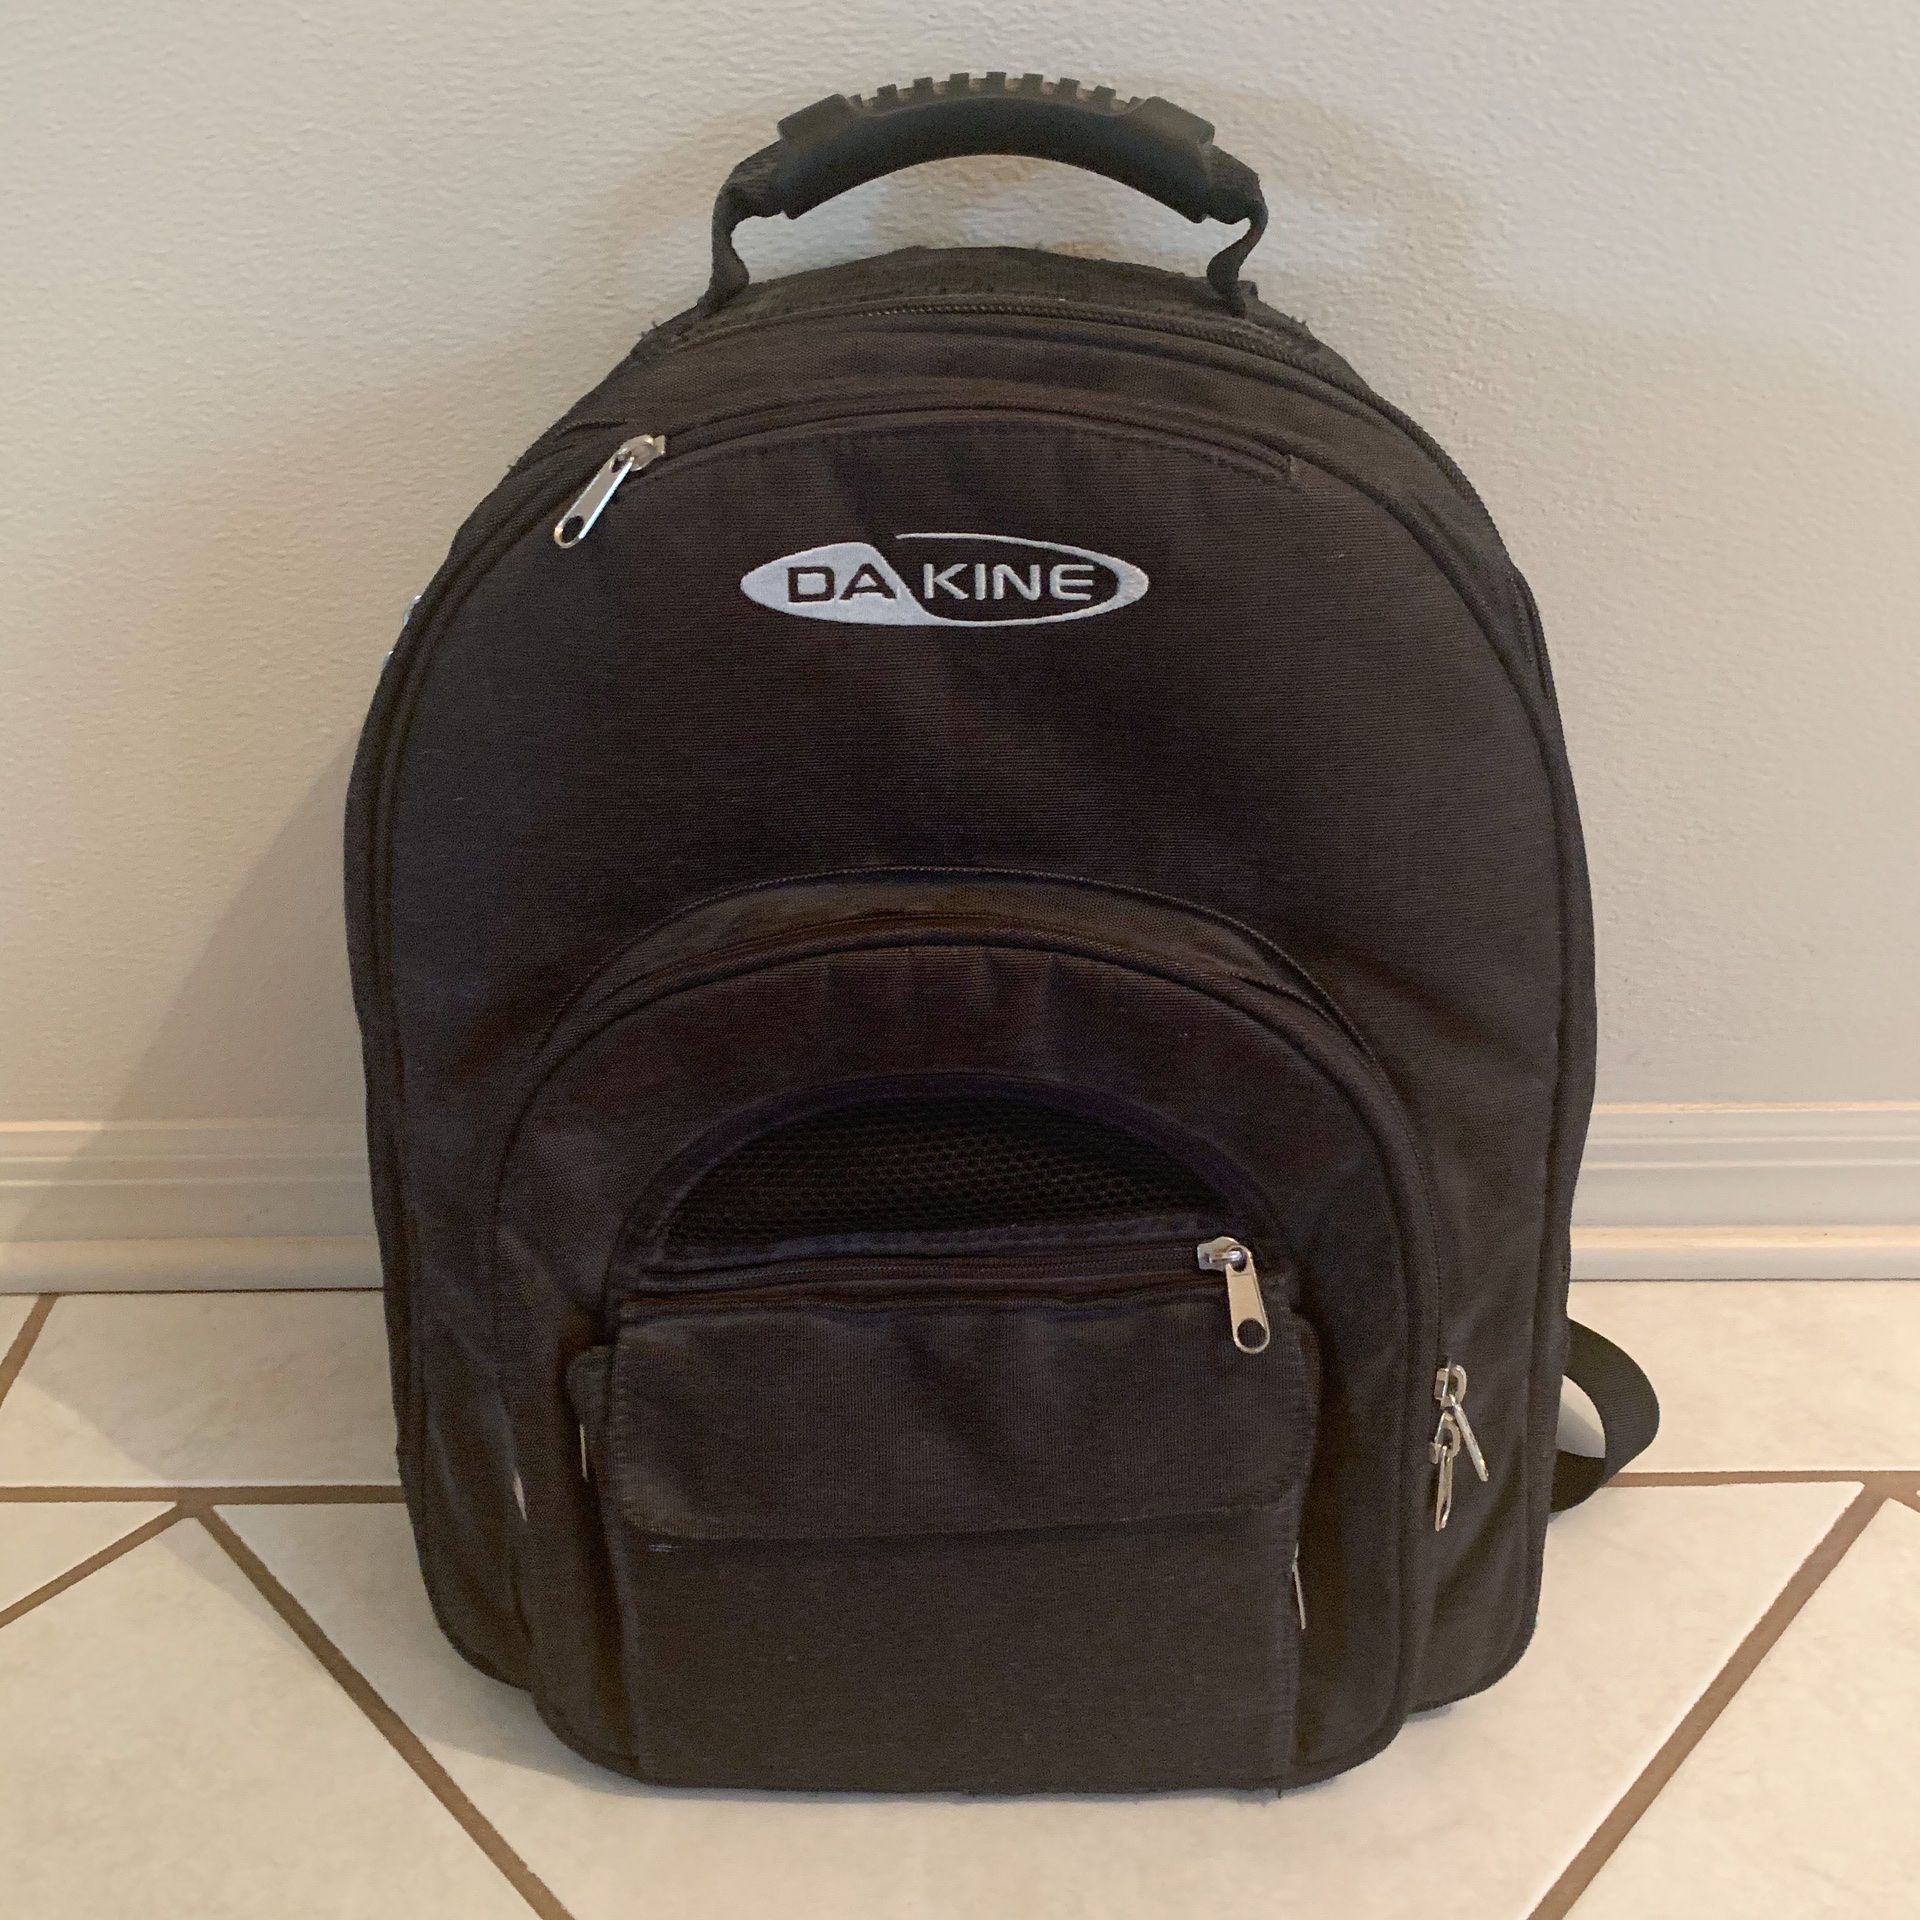 DaKine Media Backpack